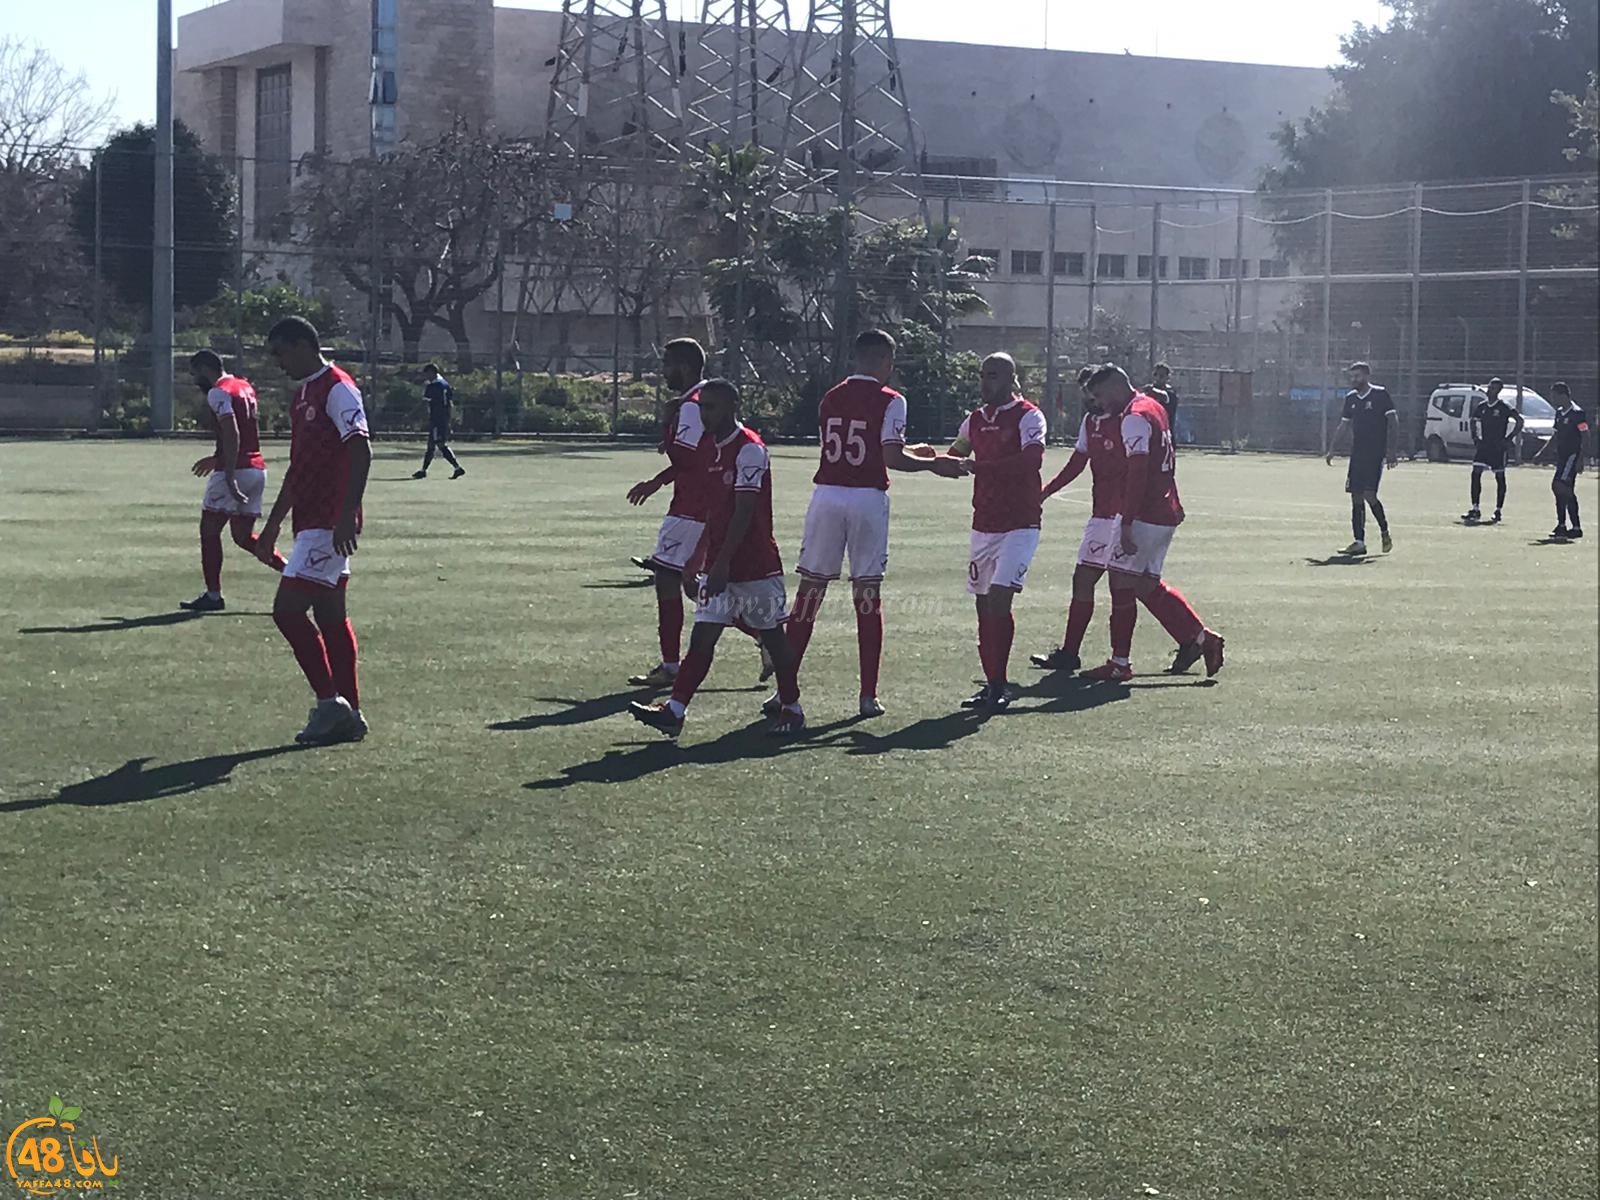   بالفيديو: فريق أبناء يافا يخسر أمام فريق الوحدة جت بنتيجة 3-1